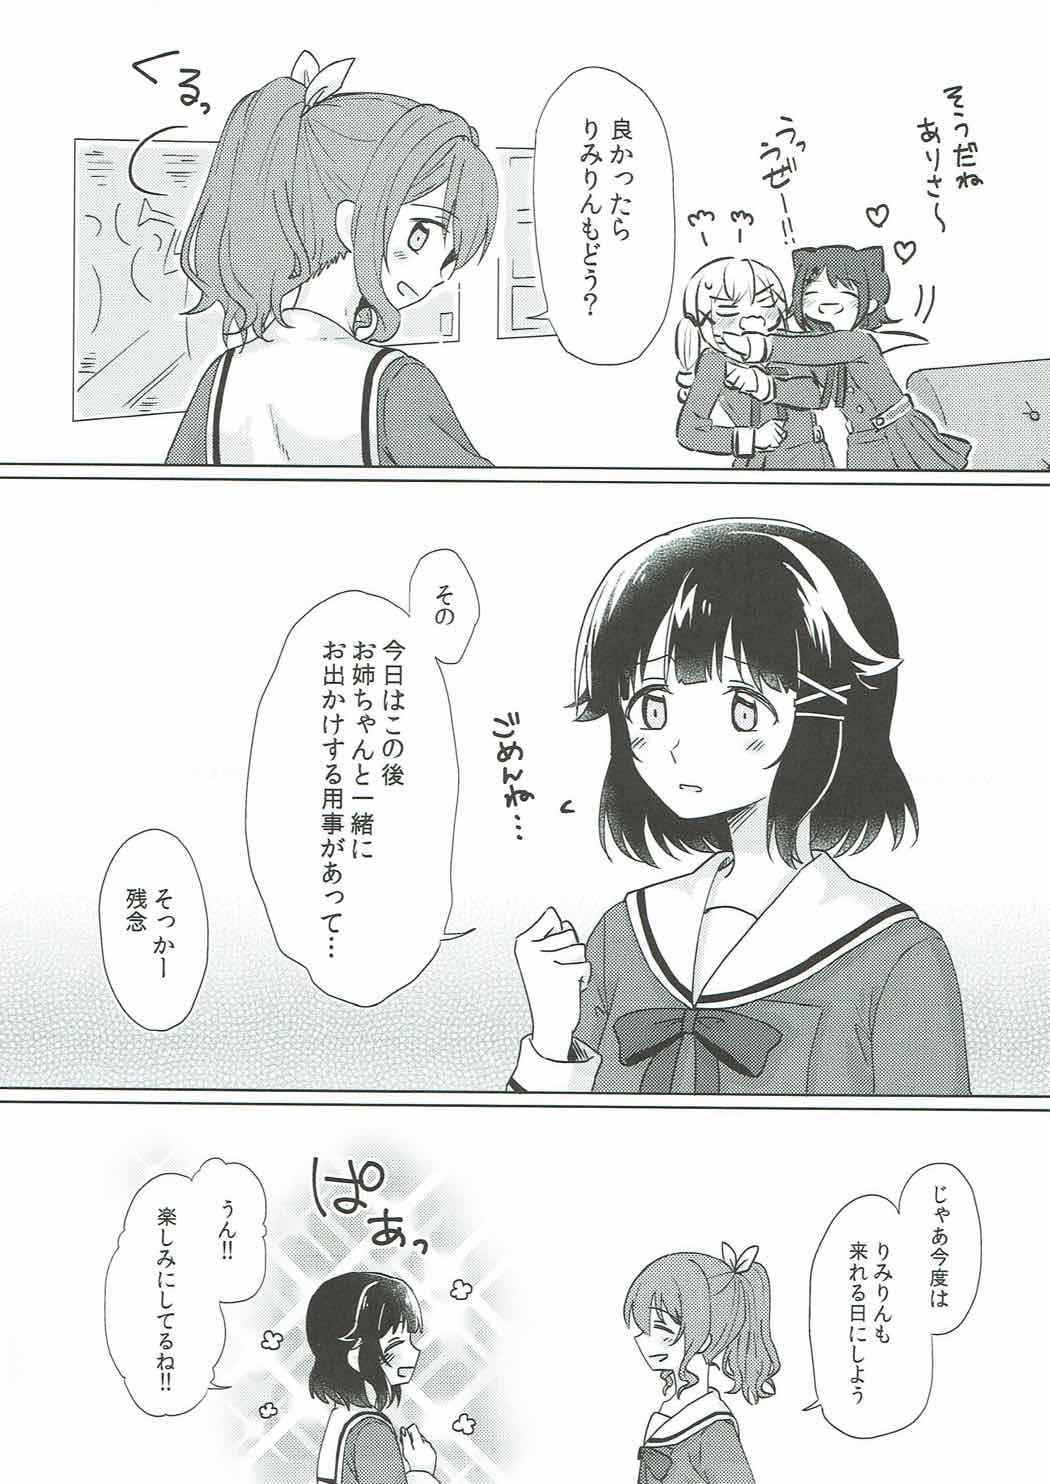 Gay Public Kyou, Uchi Tomatte Iku? - Bang dream Group - Page 6